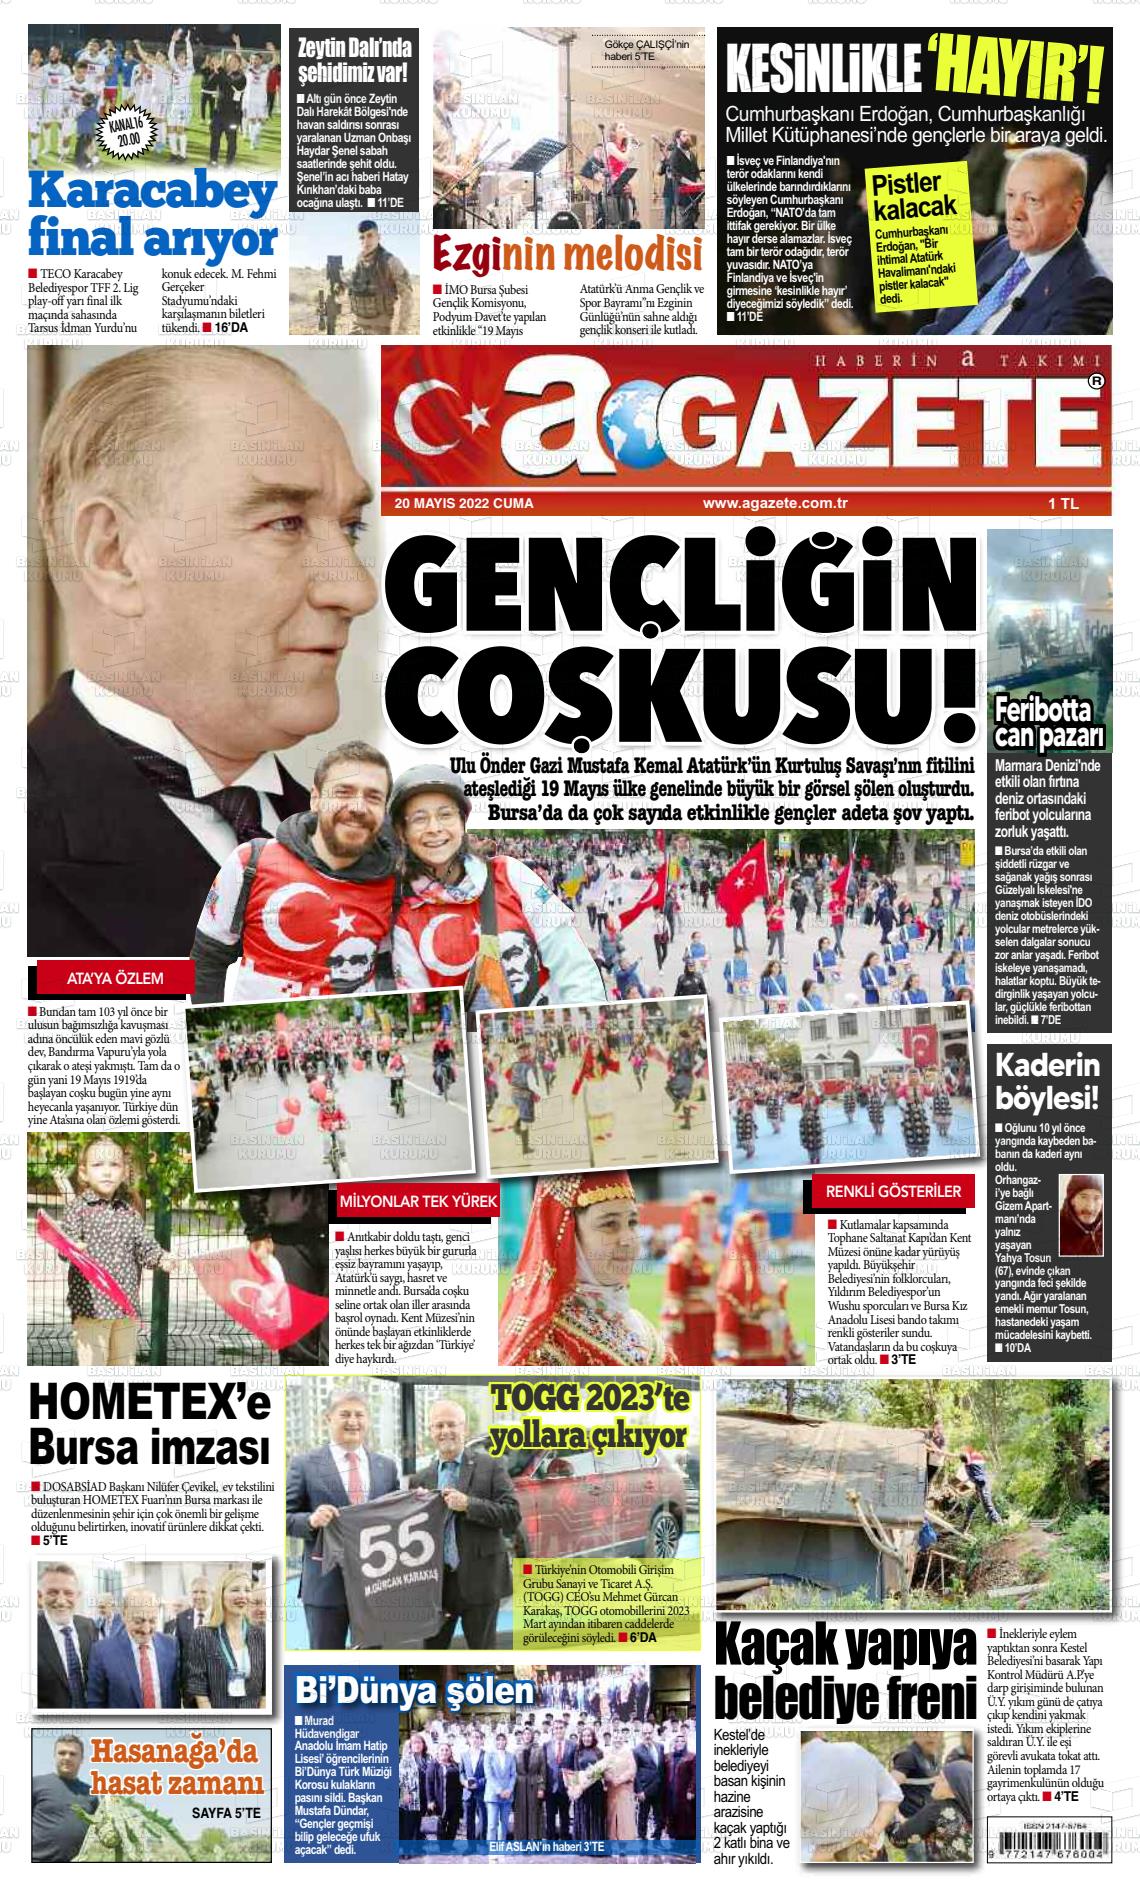 20 Mayıs 2022 a gazete Gazete Manşeti